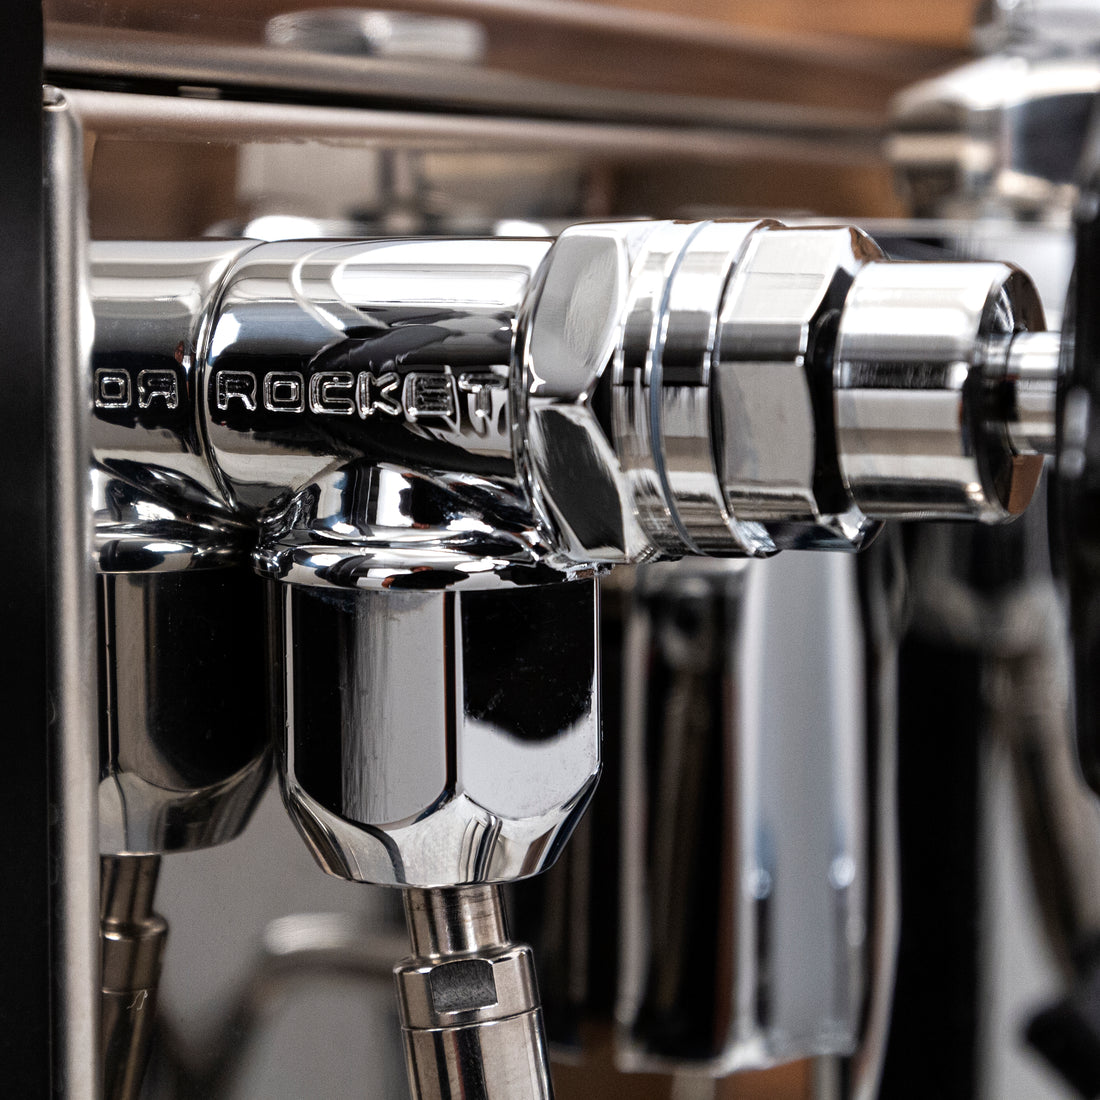 Rocket Espresso Appartamento Serie Nera Espresso Machine - Maple Curly Figured